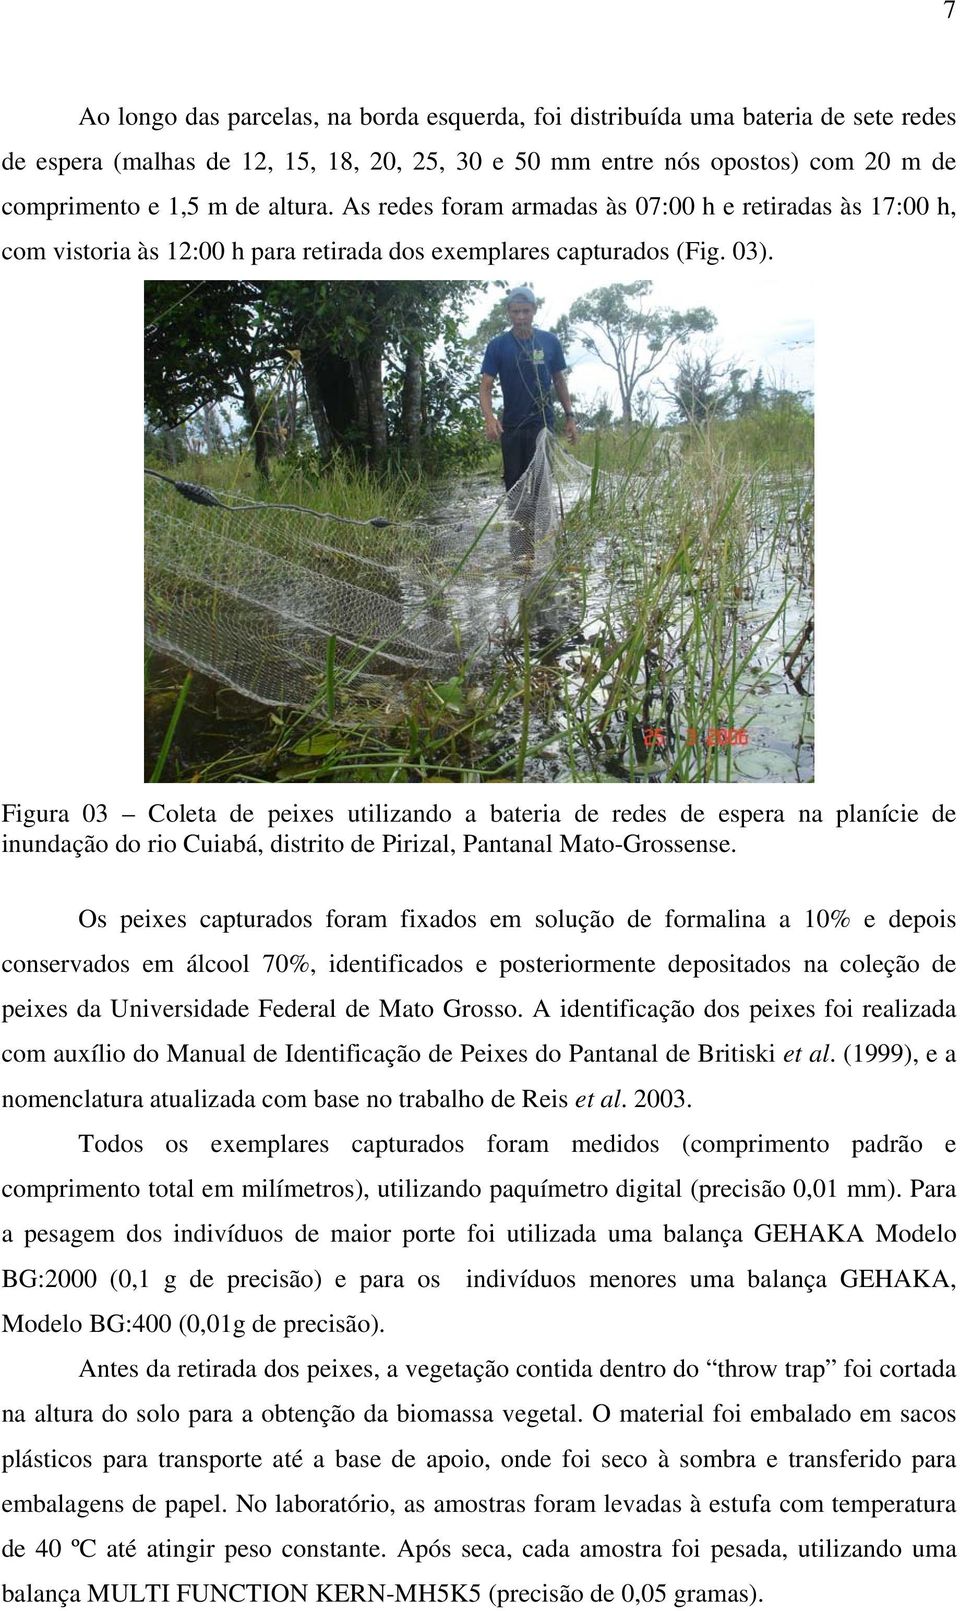 Figura 03 Coleta de peixes utilizando a bateria de redes de espera na planície de inundação do rio Cuiabá, distrito de Pirizal, Pantanal Mato-Grossense.